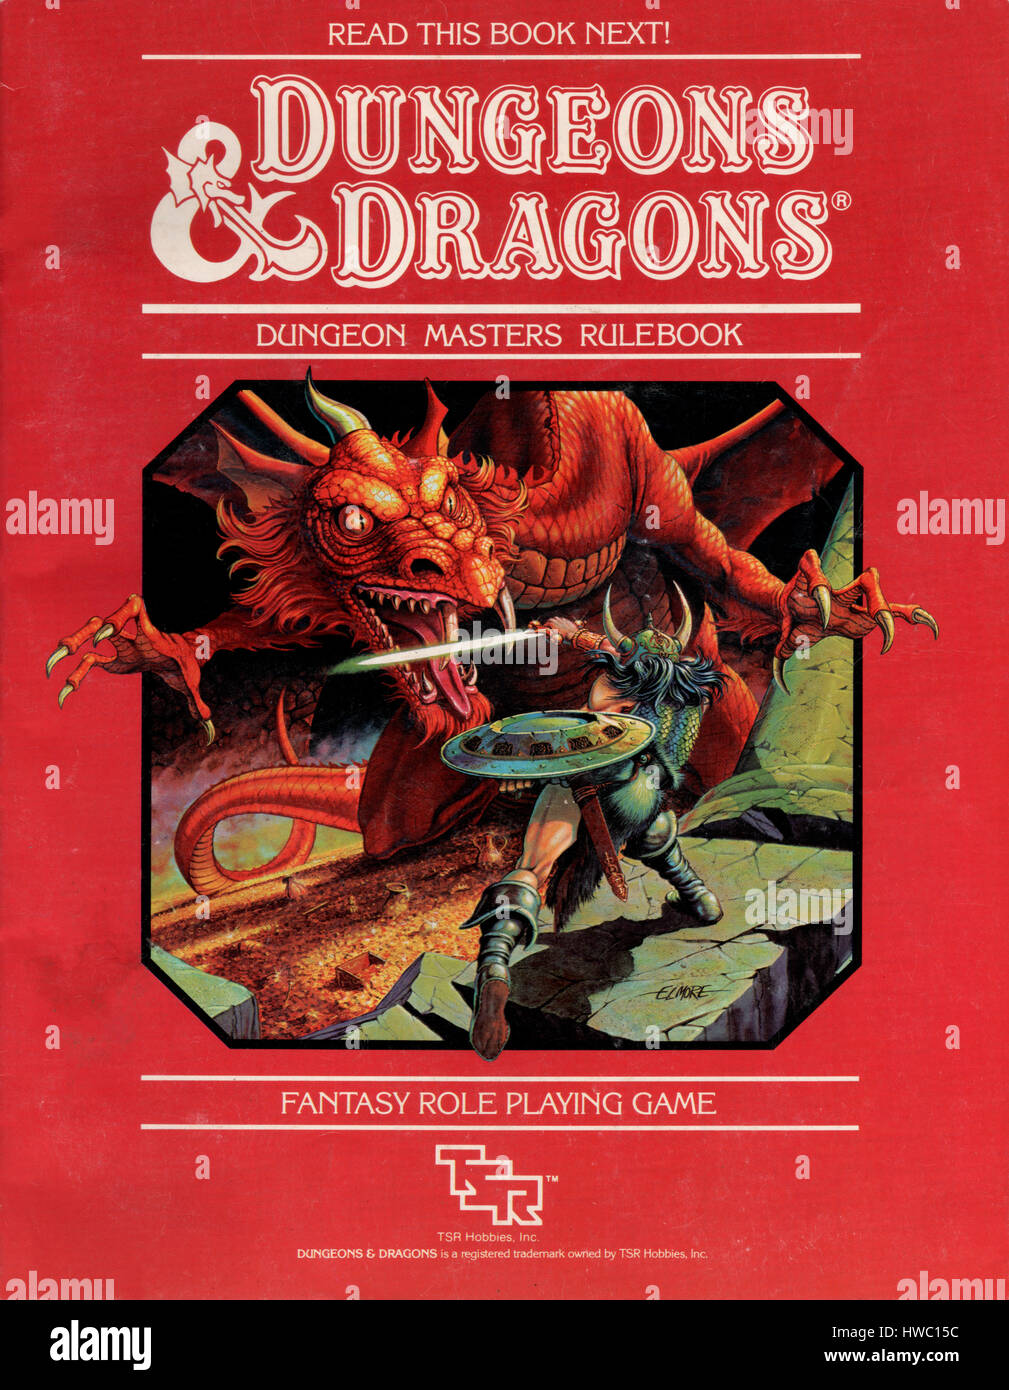 Calabozos y Dragones Dungeon Masters regla libro publicado como parte de un  pack de inicio de D&D en 1983. El juego fue diseñado por Gary Gygax y Dave  Arneson y publicado en